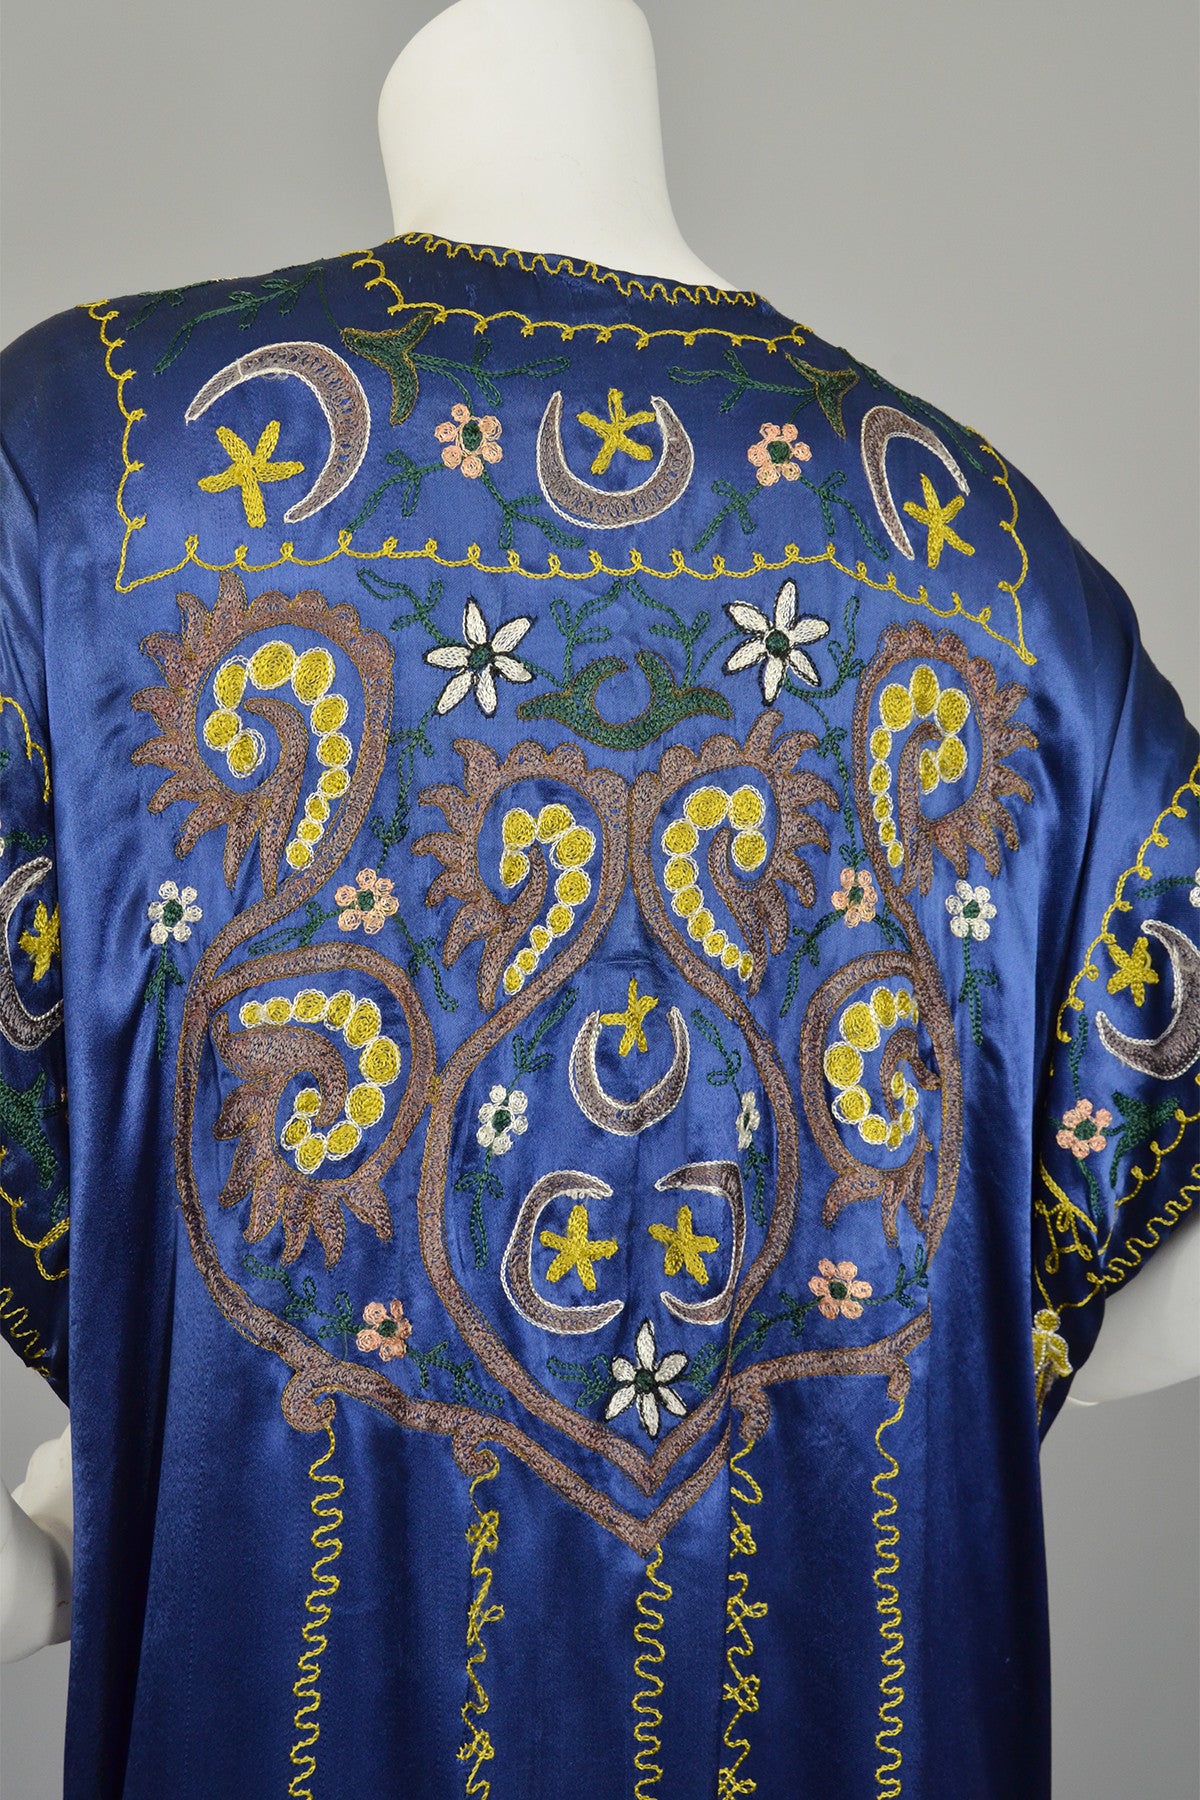 Vintage Blue Satin Embroidered Tassels Duster Maxi Vest